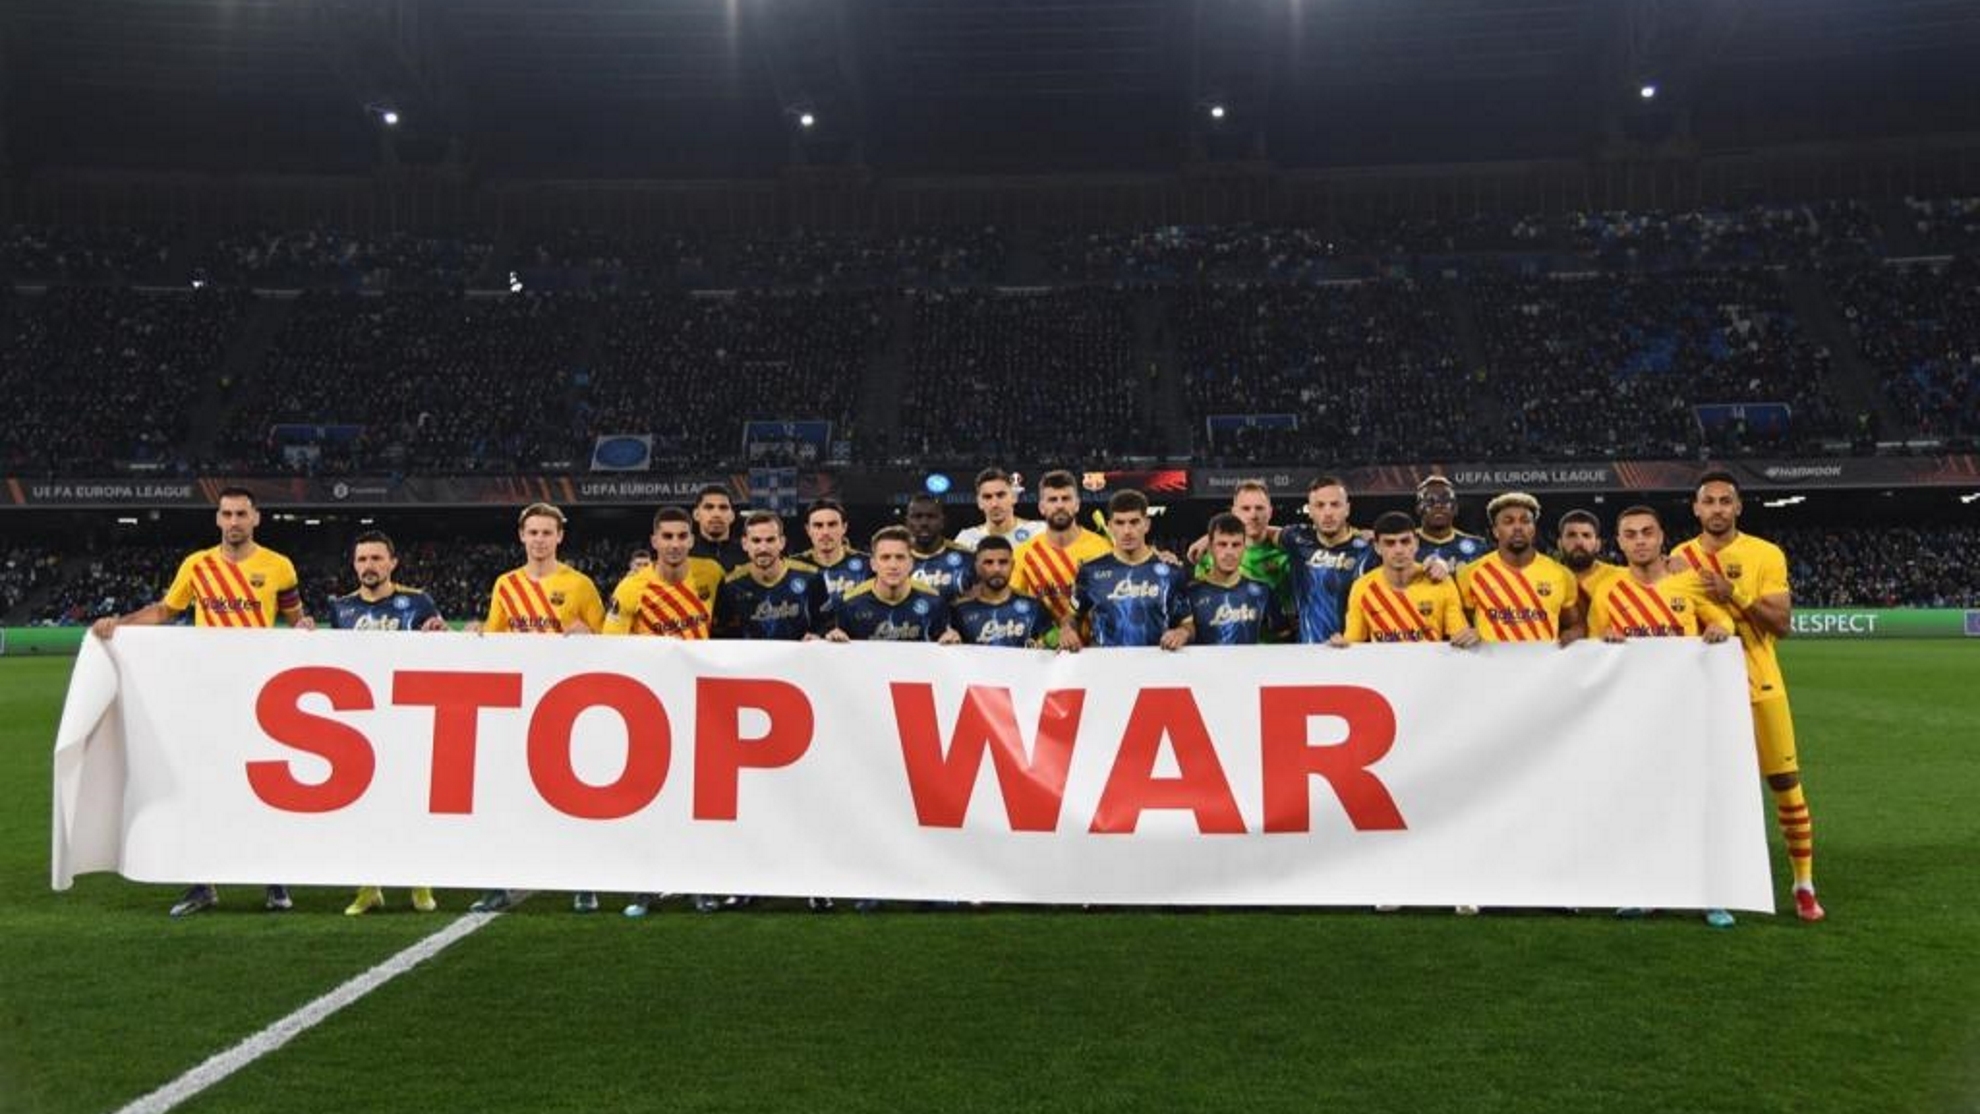 Imagen de la pancarta mostrada por los futbolistas antes del partido.